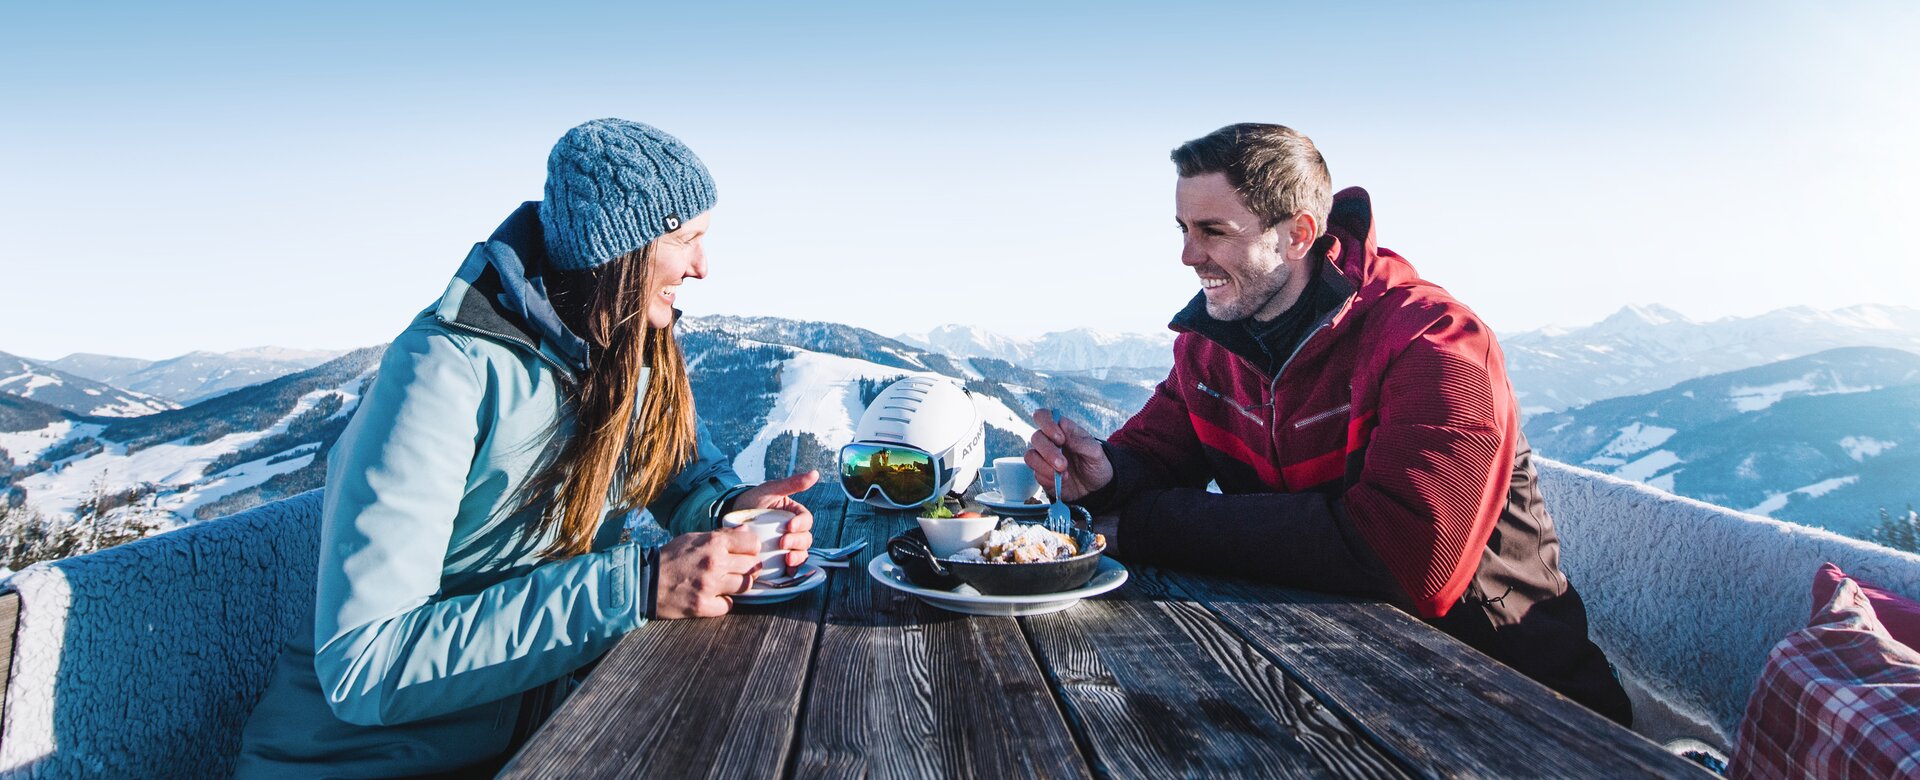 TASTE Ski amadé - der beste Geschmack aus Österreichs Bergen in gemütlichen Hütten